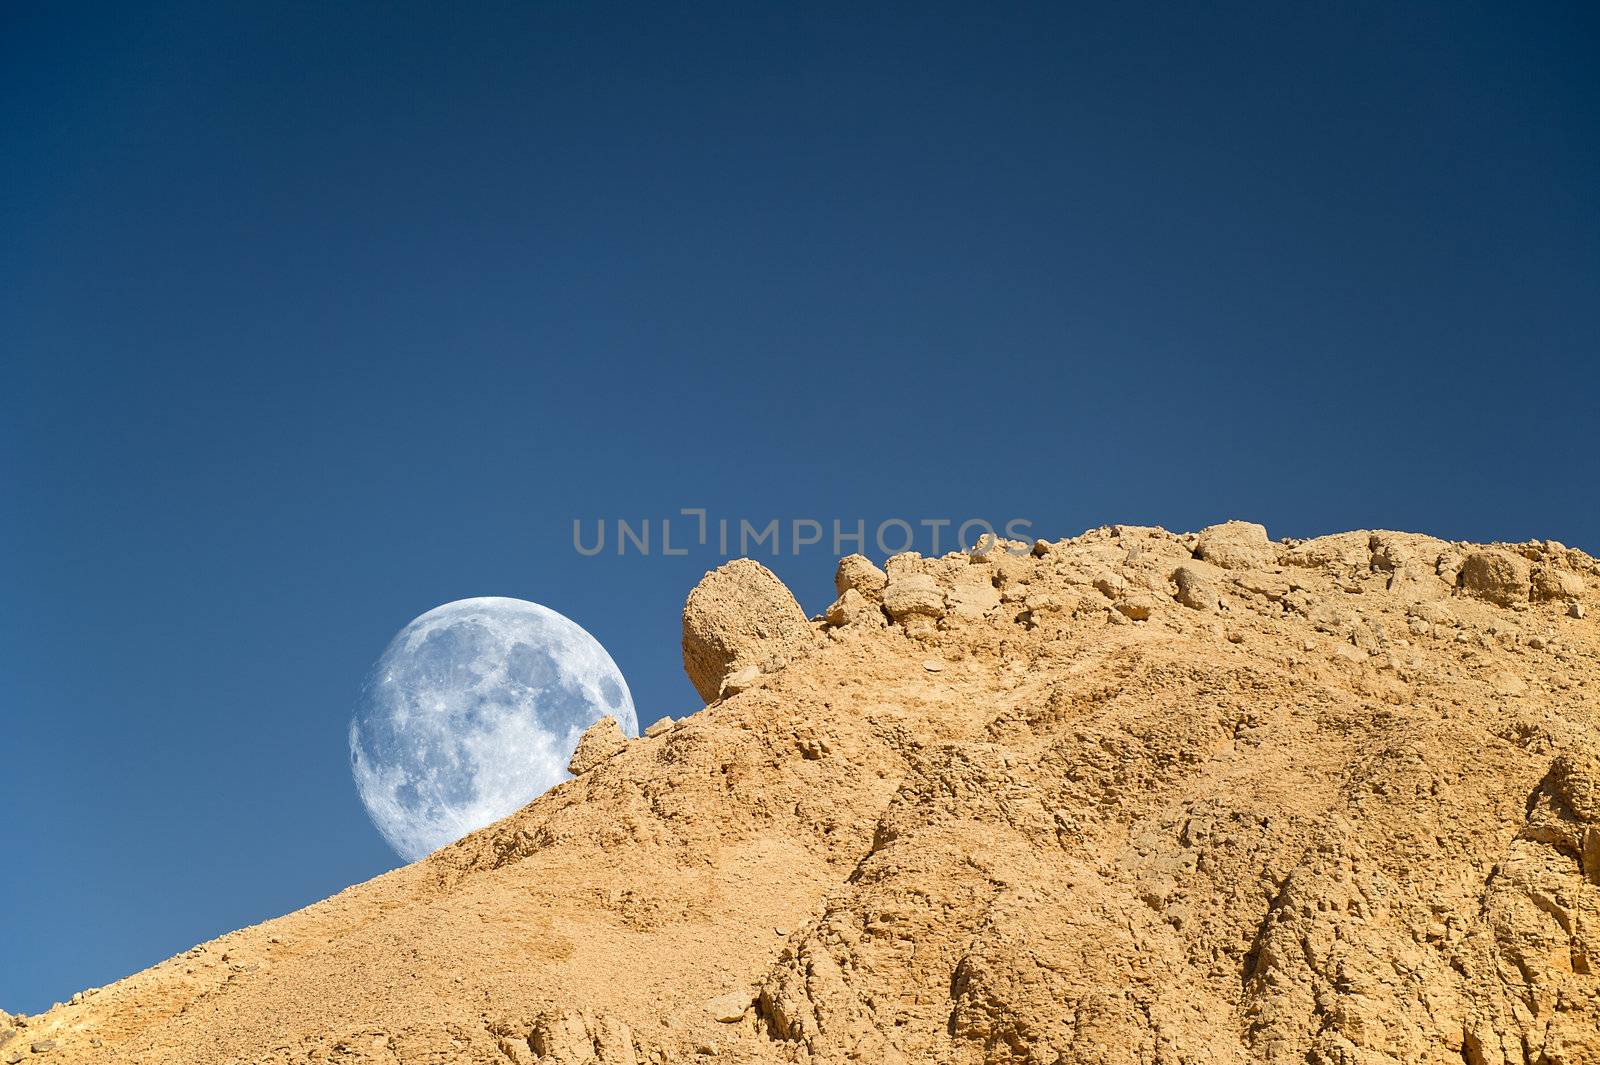 Full moon setting over the rocky desert in Egypt